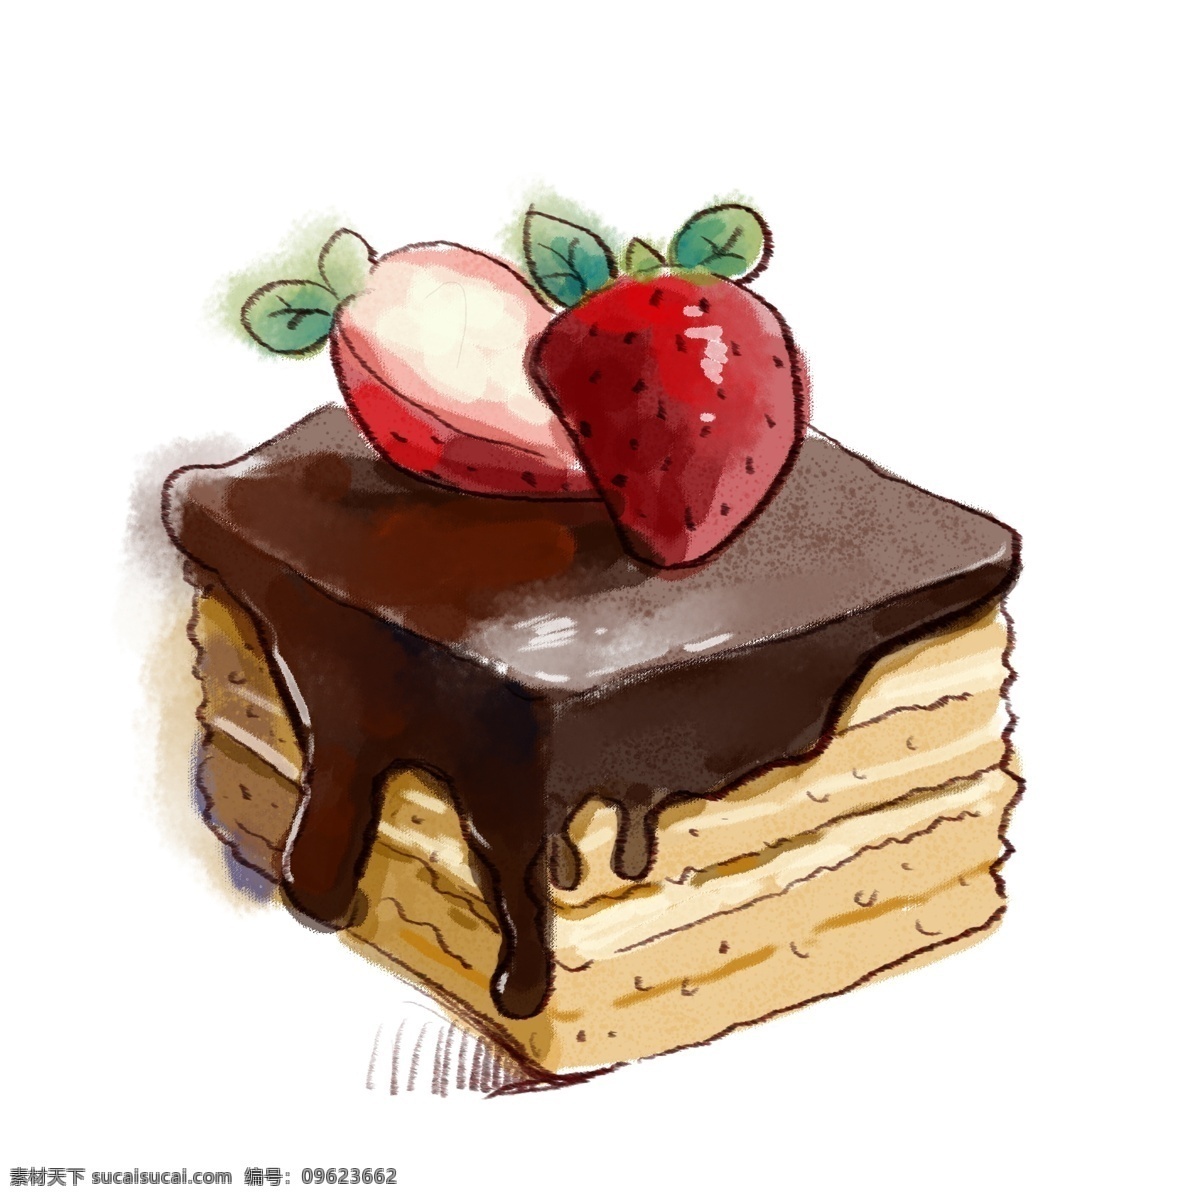 手绘 水彩 草莓 蛋糕 小清新 免抠 卡通 原创 可爱 奶油 樱桃 汉堡 糕点 美丽 美味 美食 食物 女生 水果 蔬菜